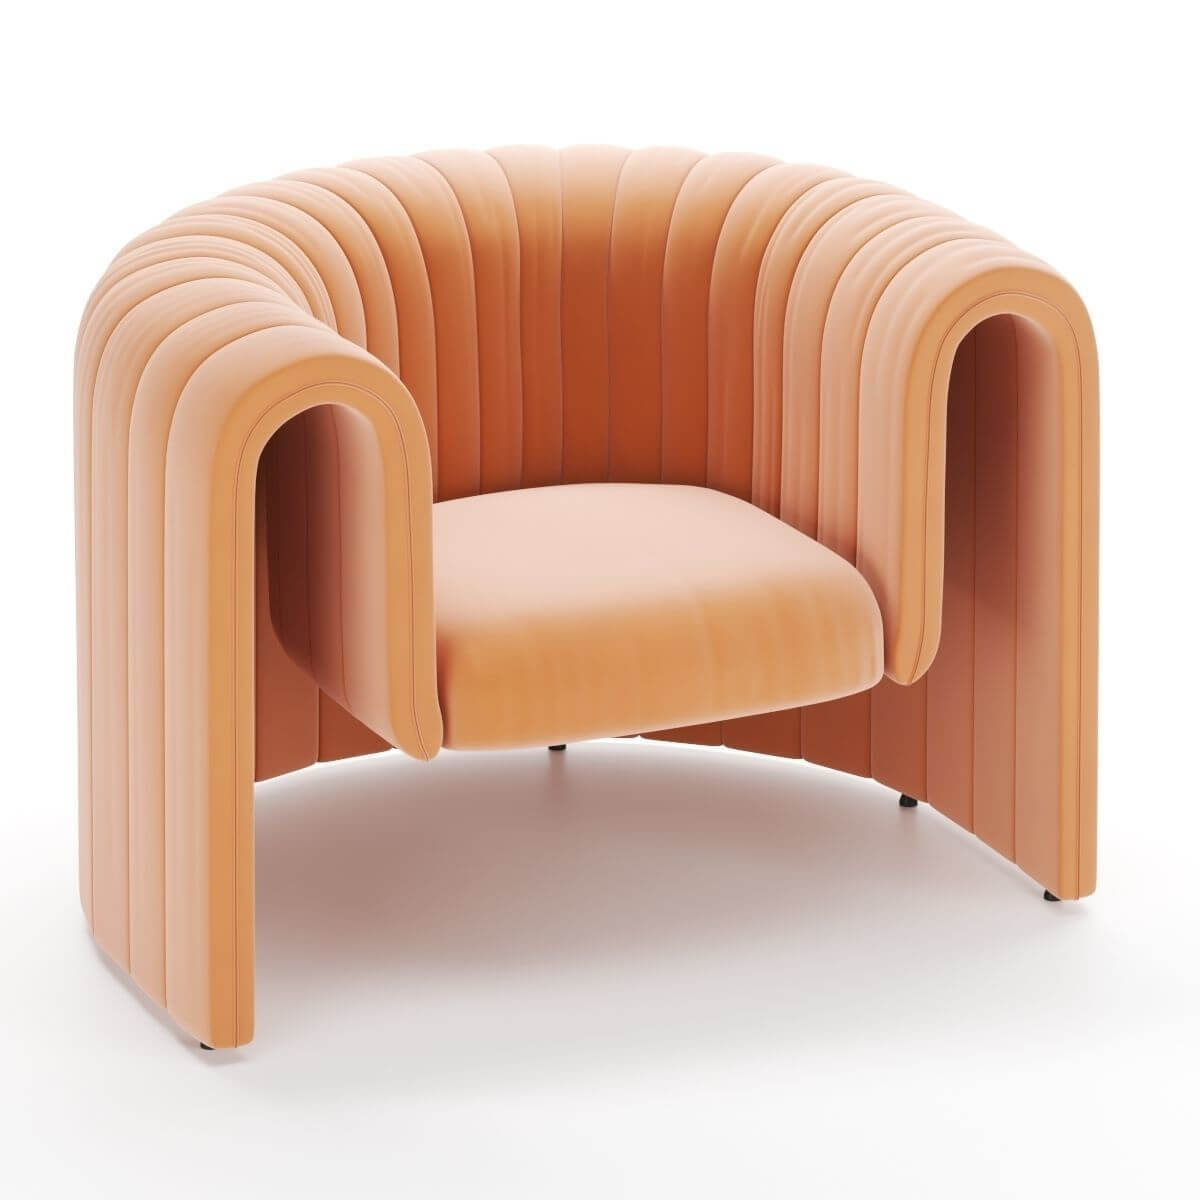 Designer-armchair-in-Australia-7